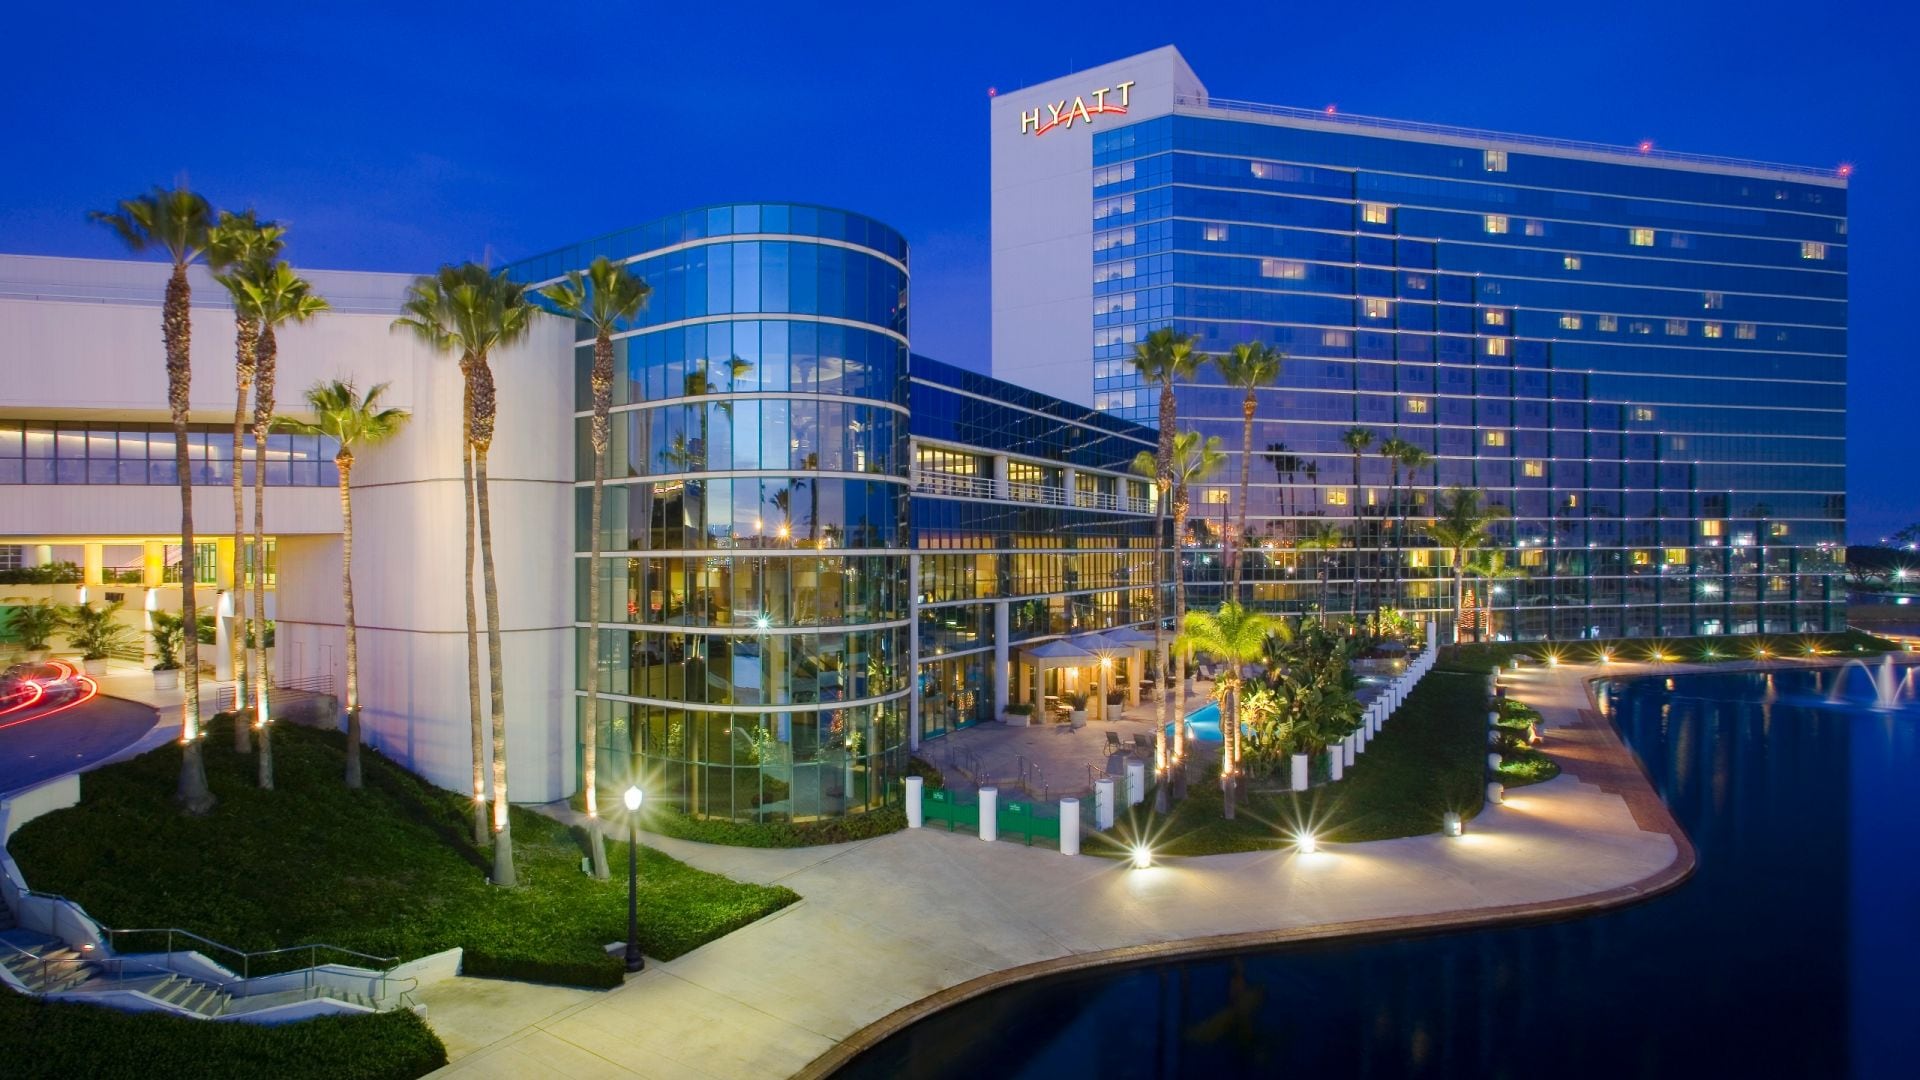 Waterfront Long Beach Hotel Hyatt Regency Long Beach